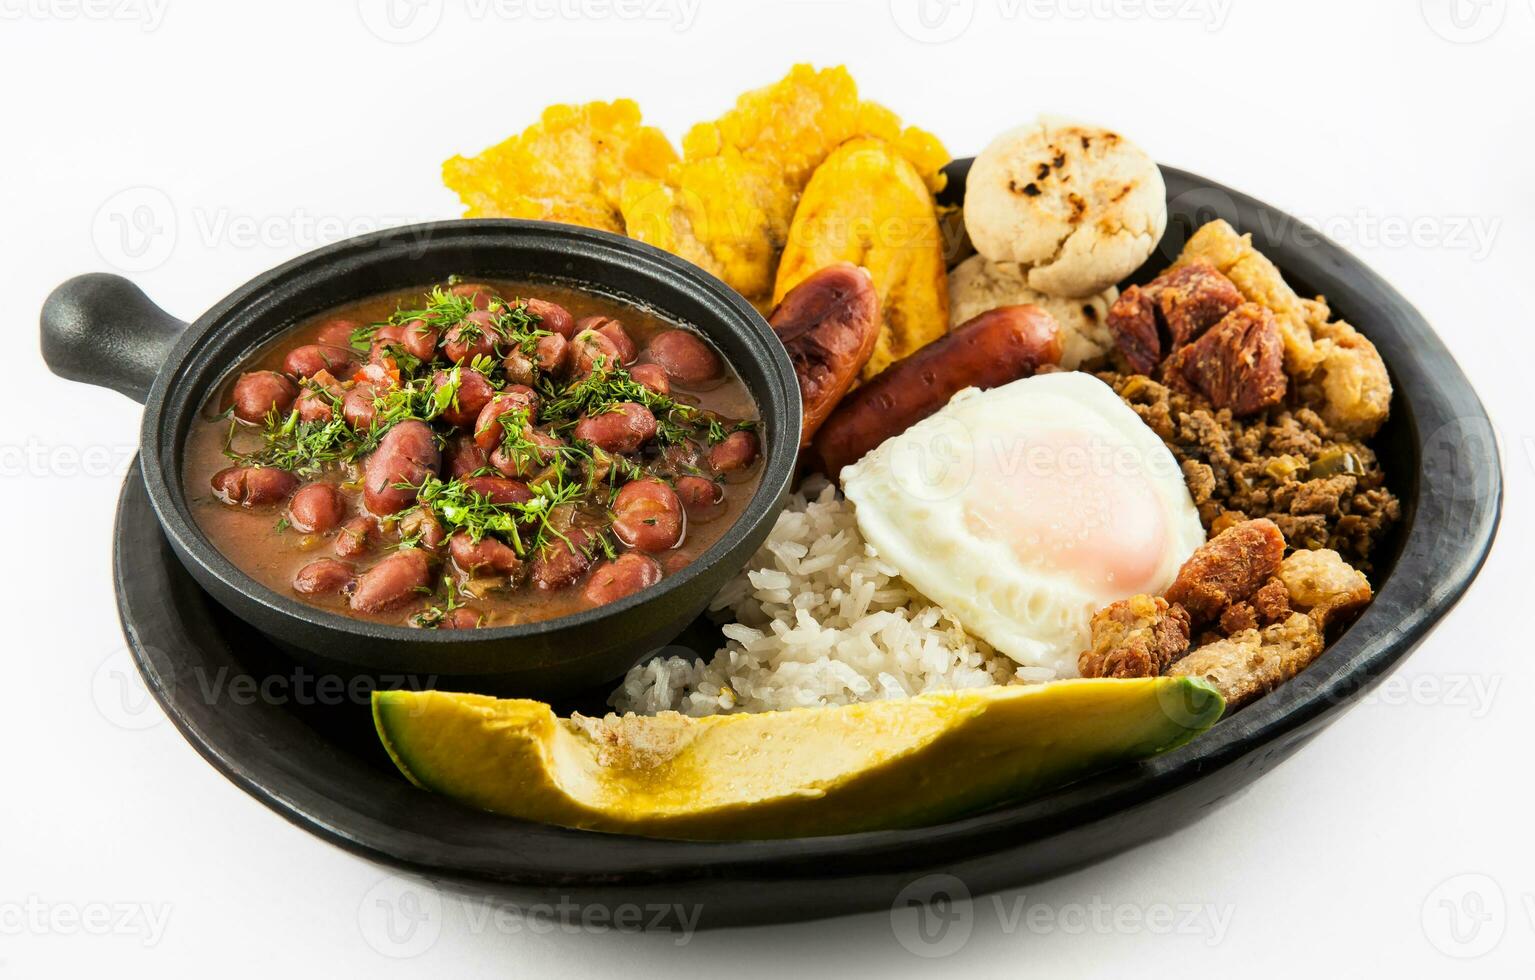 traditionell colombianska maträtt kallad banda paisa en tallrik typisk av medellin den där inkluderar kött, bönor, ägg och groblad foto